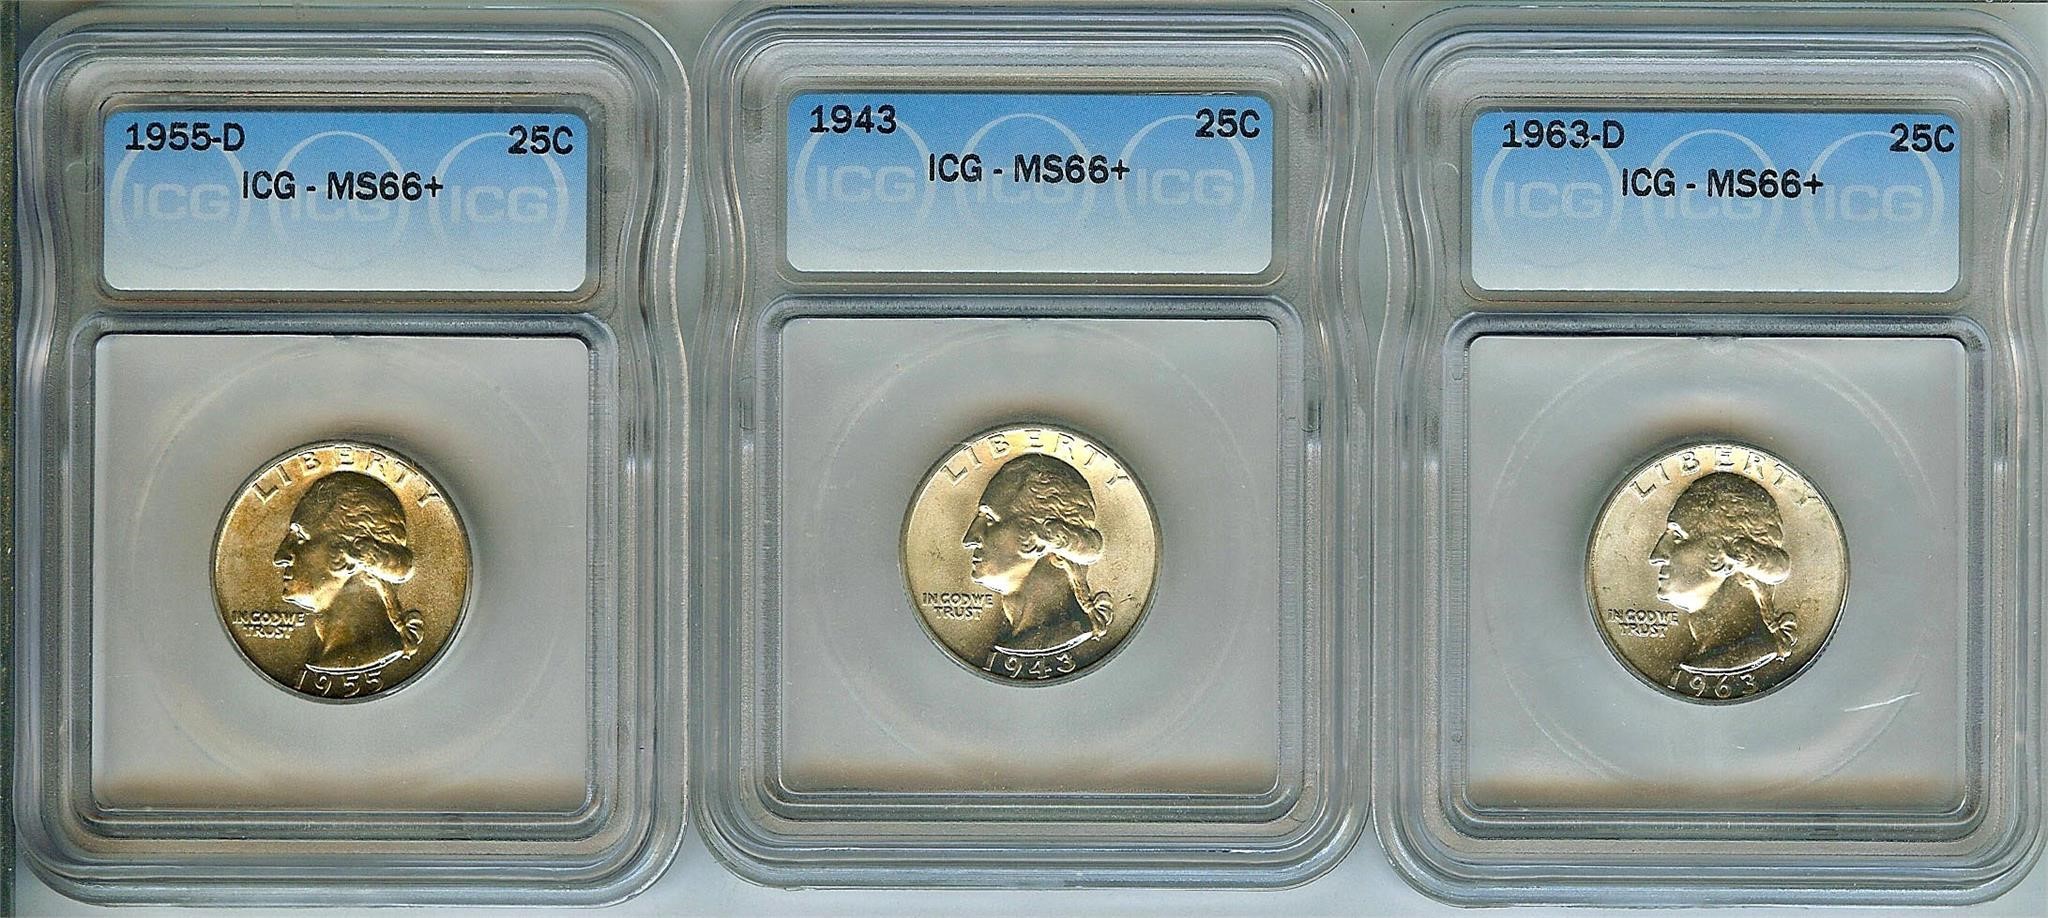 1943 1955-D 1963-D Quarter ICG MS66+ LISTS $1550